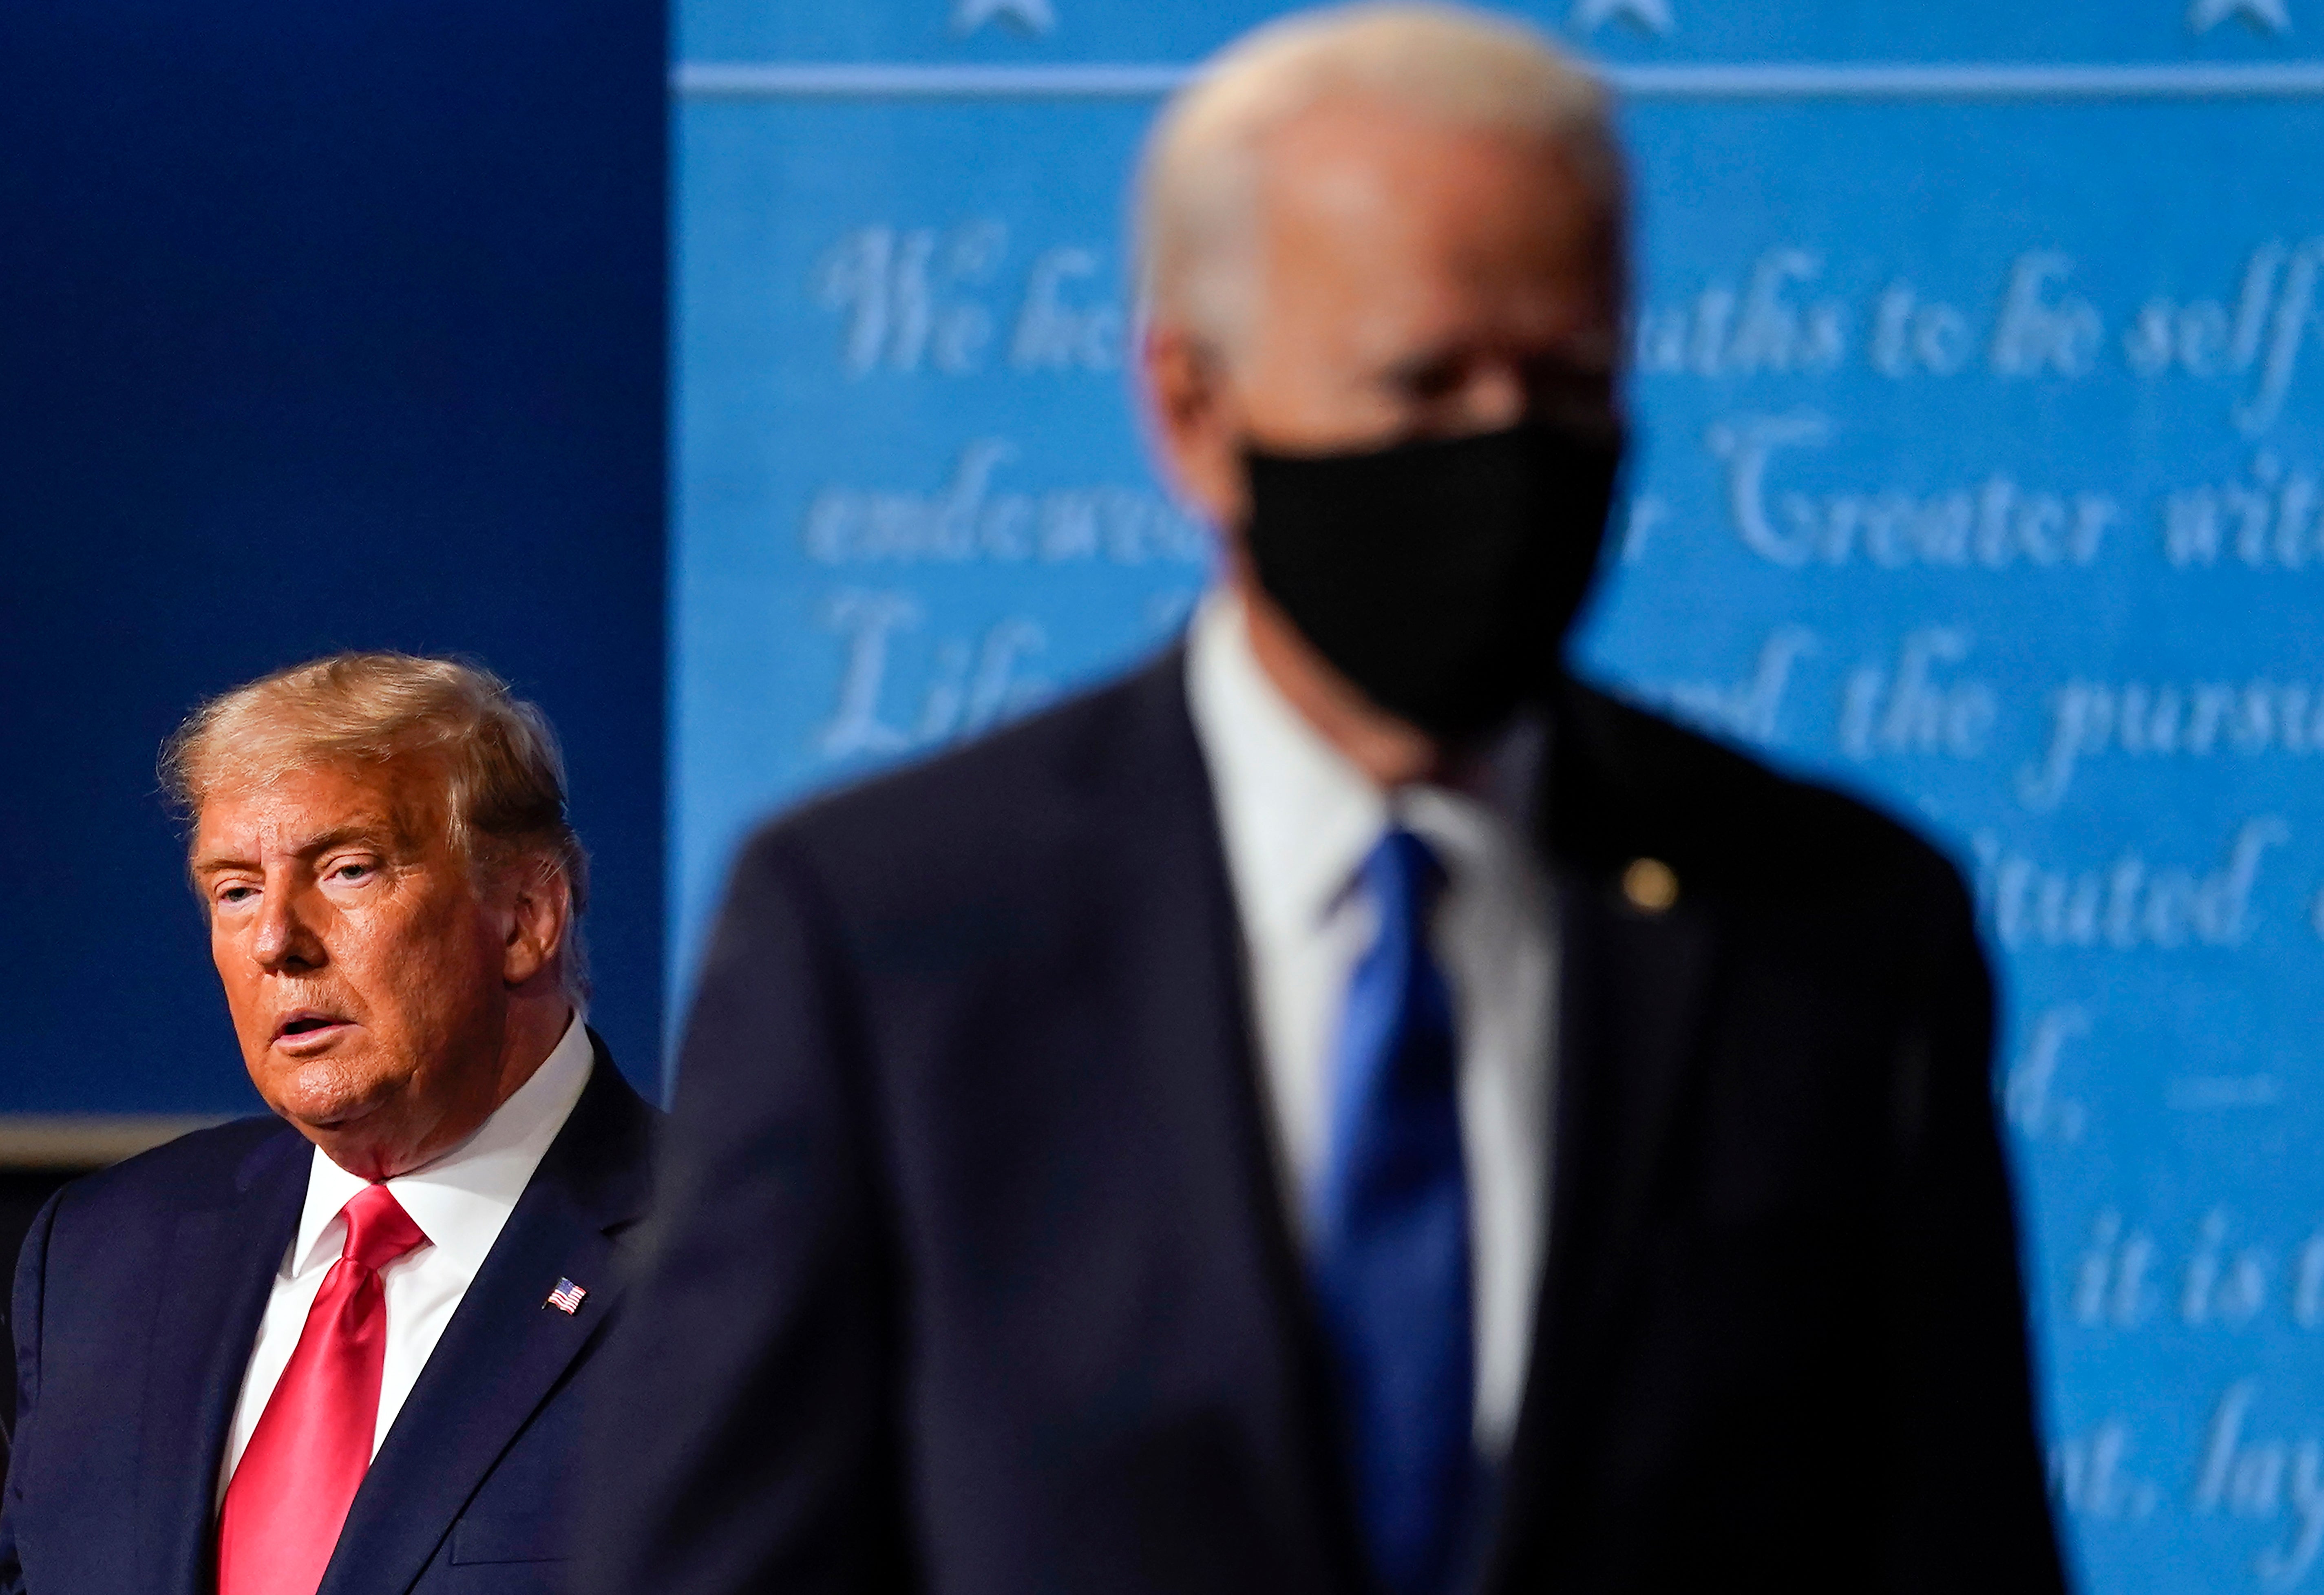 <p>ARCHIVO - El presidente Donald Trump, izquierda, permanece en el escenario mientras el entonces candidato demócrata Joe Biden se aleja, 22 de octubre de 2020 en la Universidad Belmont, Nashville, Tennessee.</p>